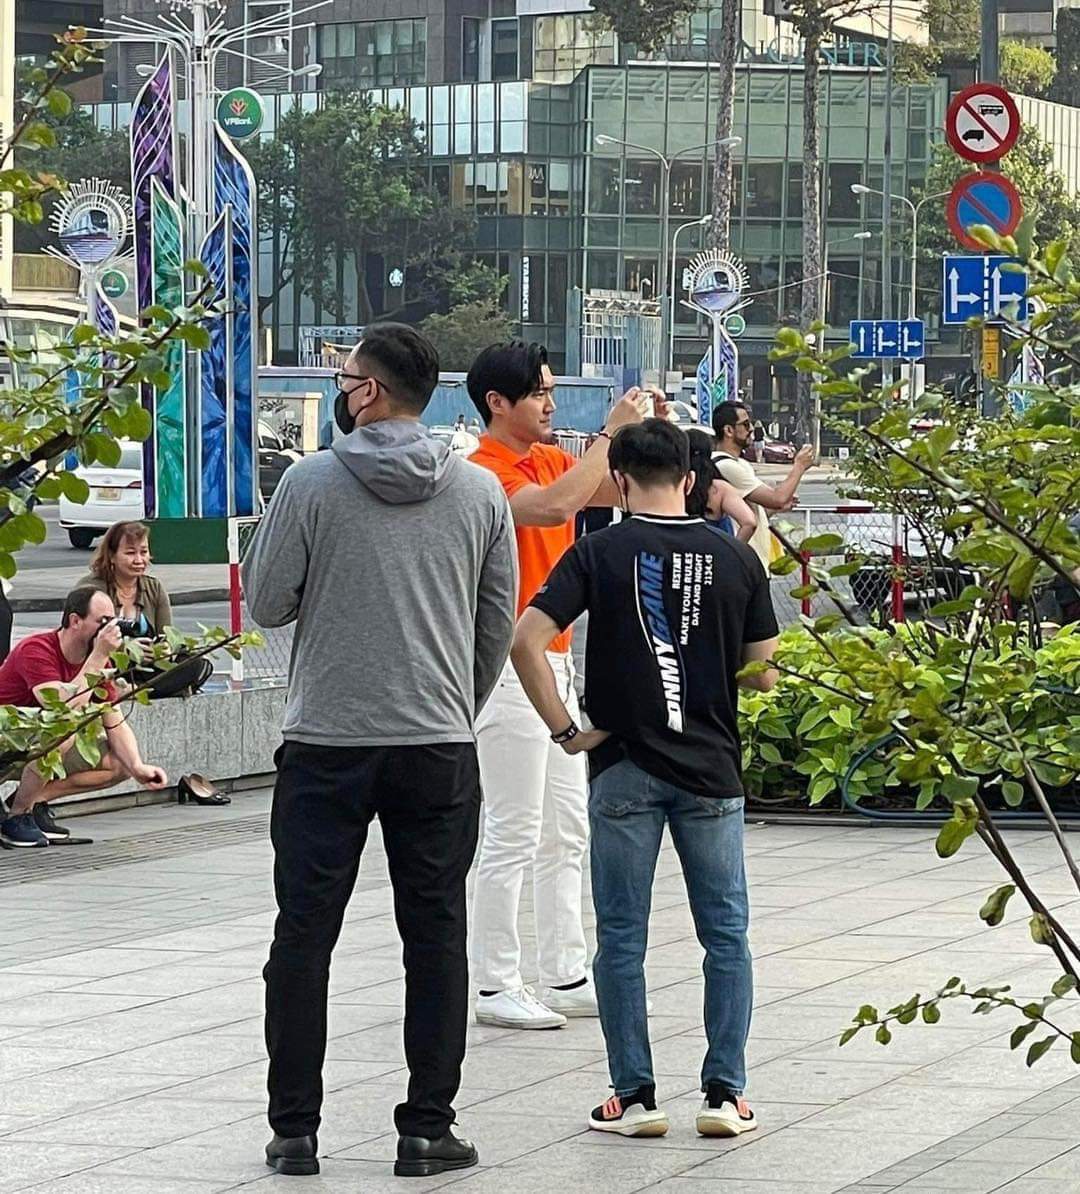 Chồng tui Siwon với chiếc áo cam nổi bật tại phố đi bộ Nguyễn Huệ.

Phải book vé vào HCM ngay thôii 😩

Ảnh: B H Mai Anh